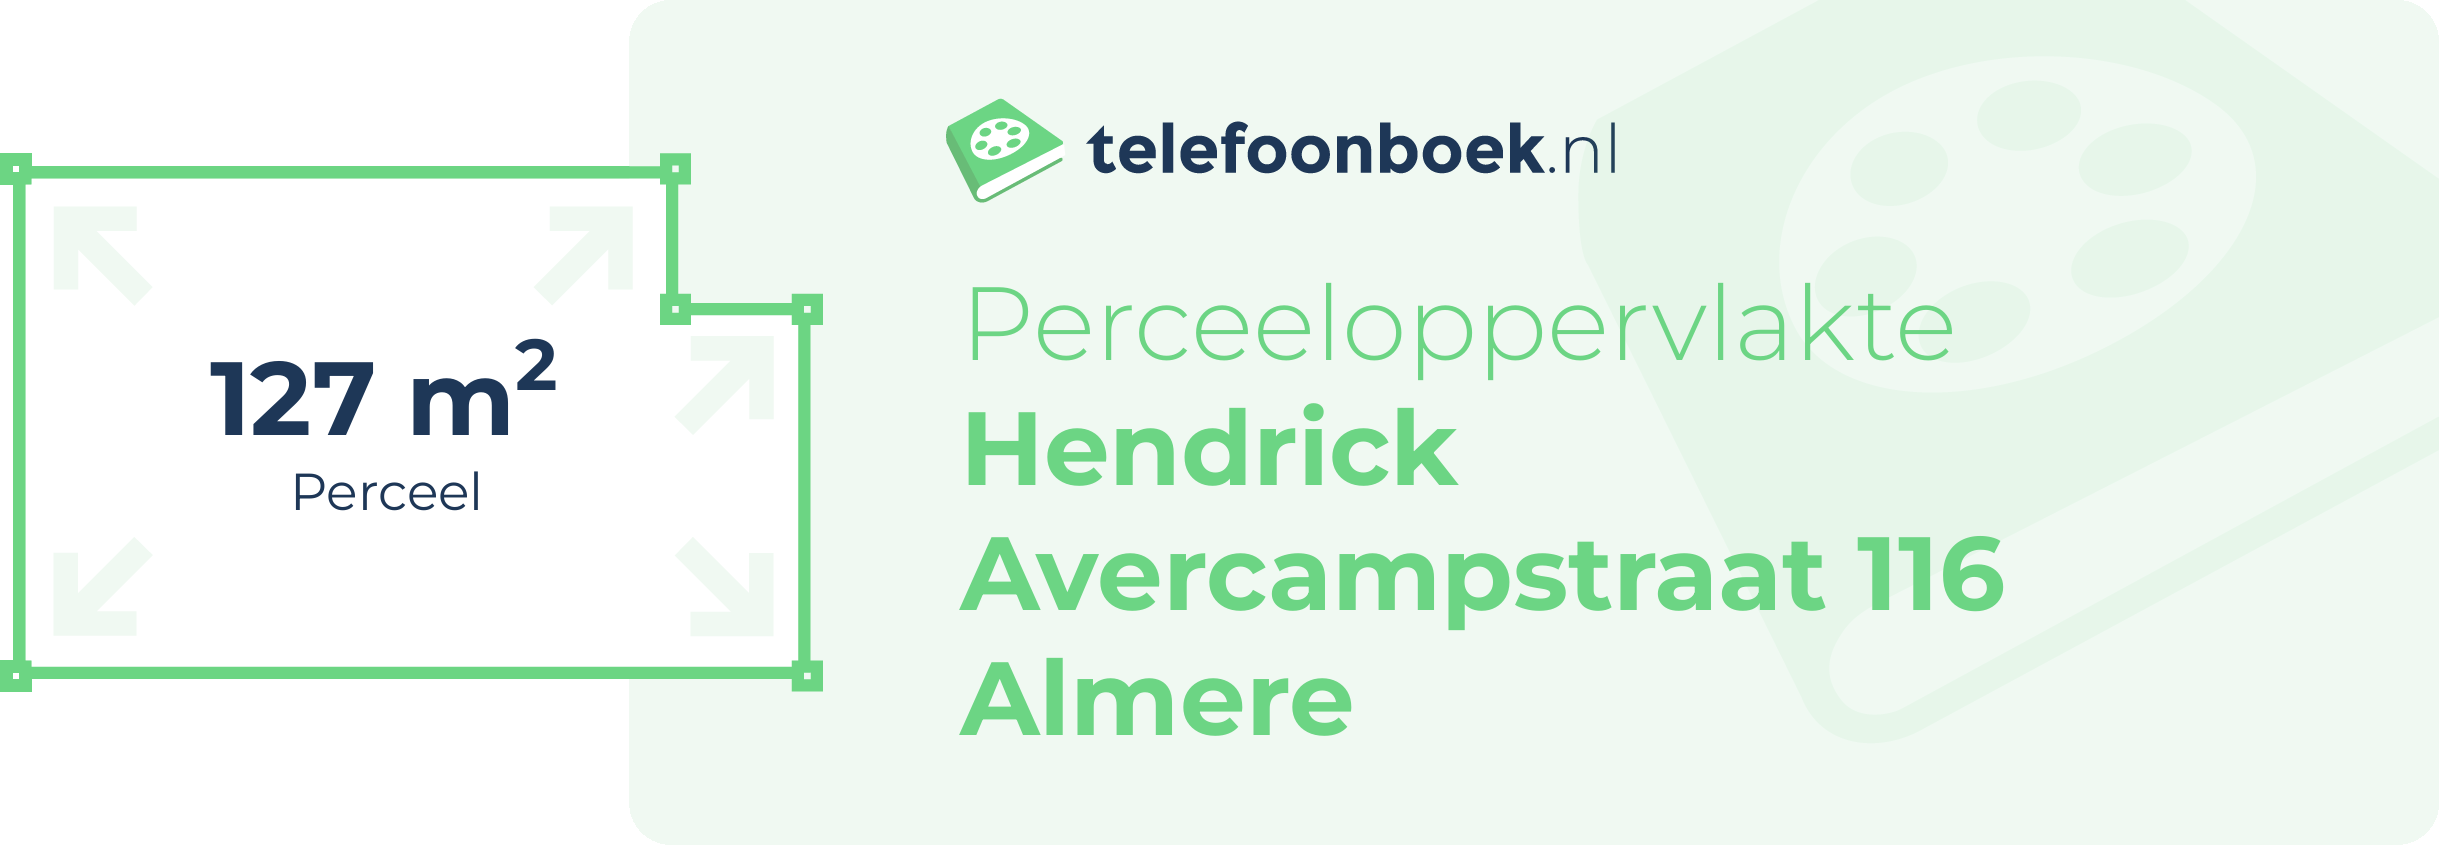 Perceeloppervlakte Hendrick Avercampstraat 116 Almere